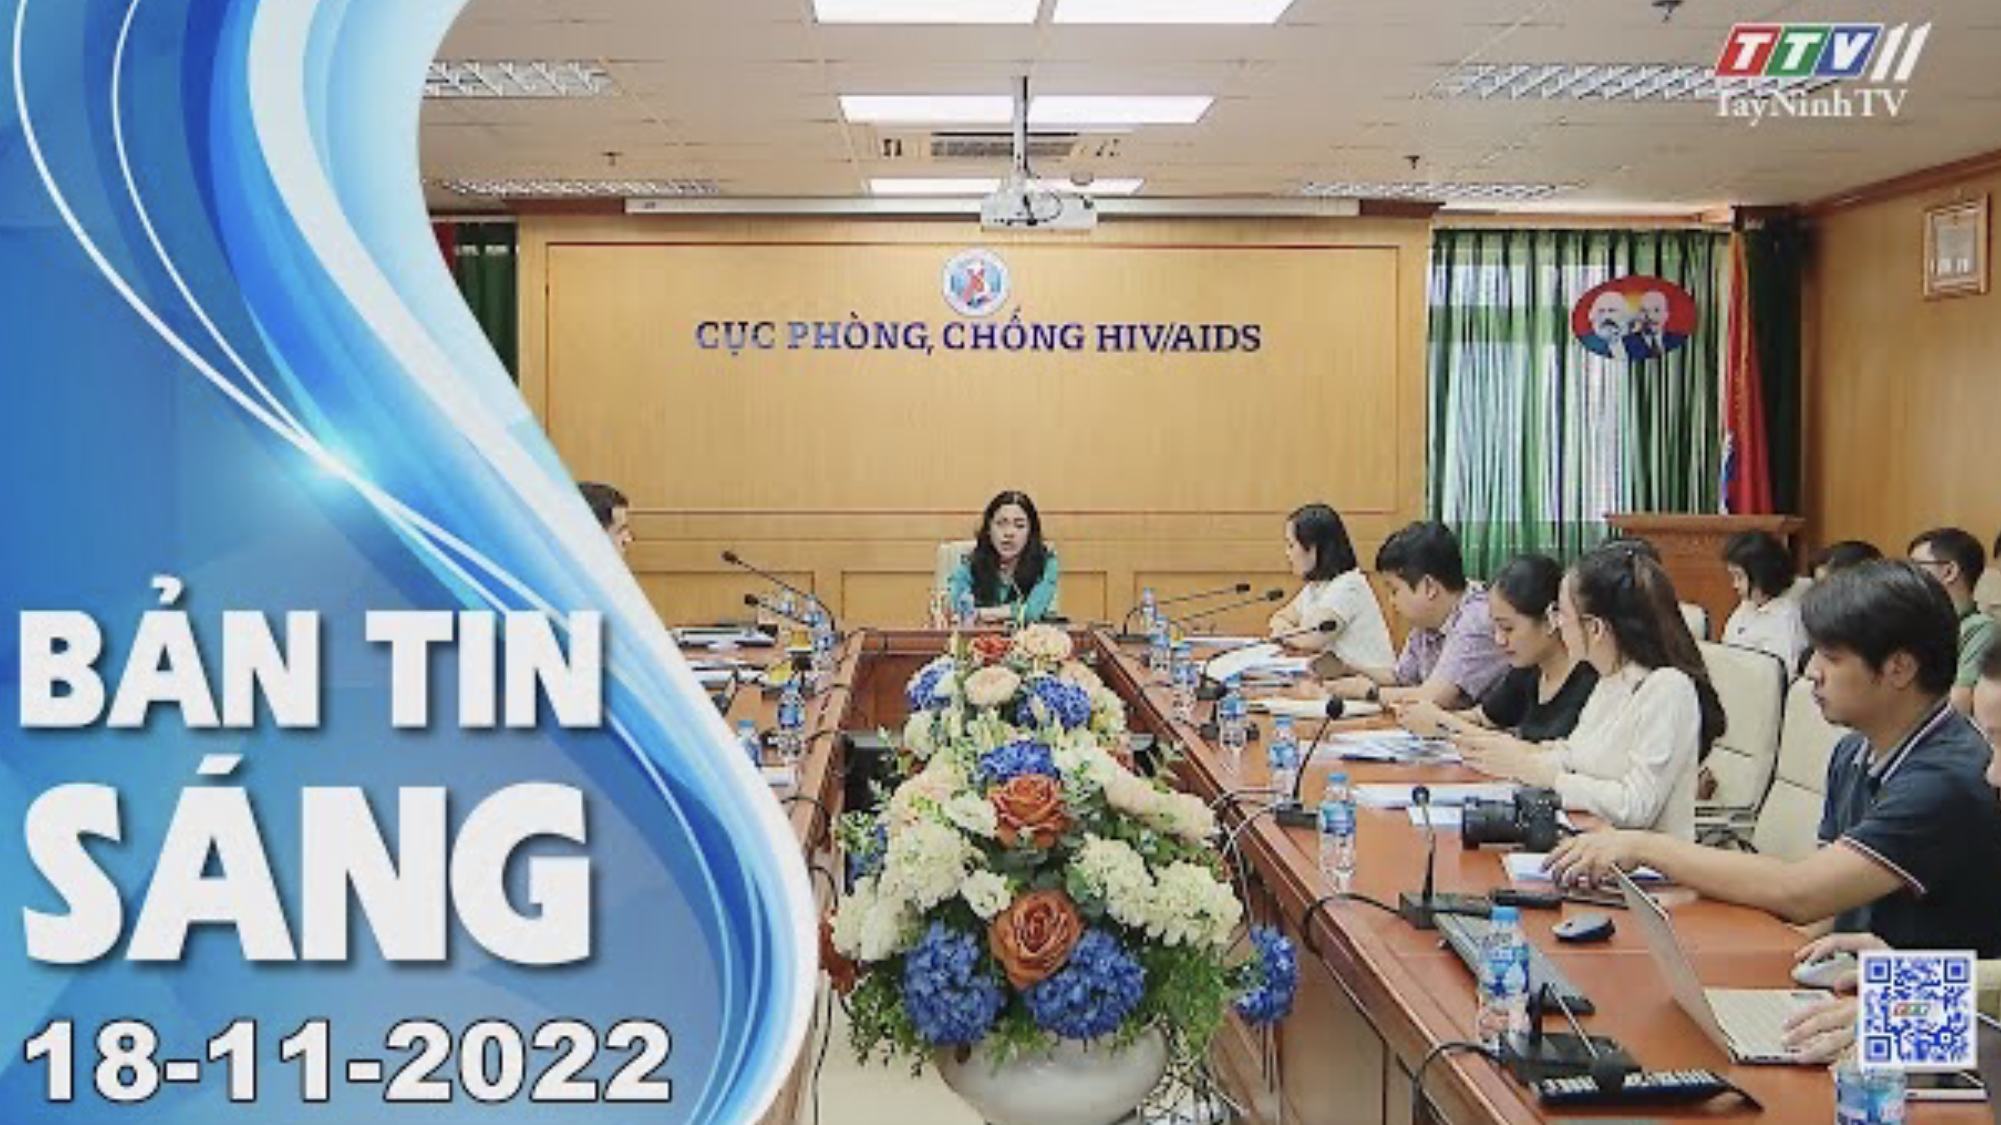 Bản tin sáng 18-11-2022 | Tin tức hôm nay | TayNinhTV